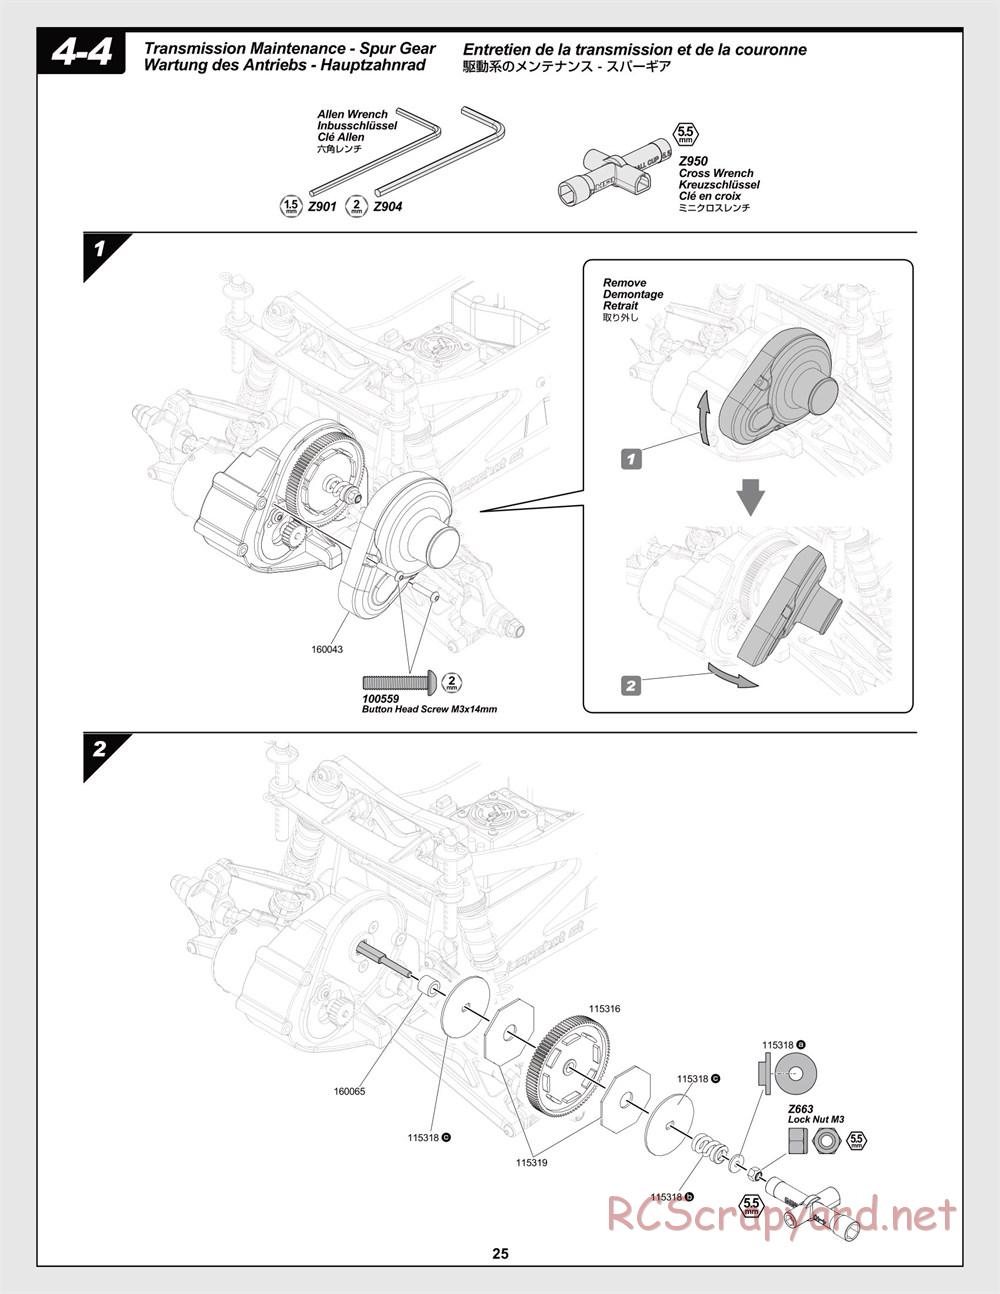 HPI - Jumpshot MT Flux - Manual - Page 25